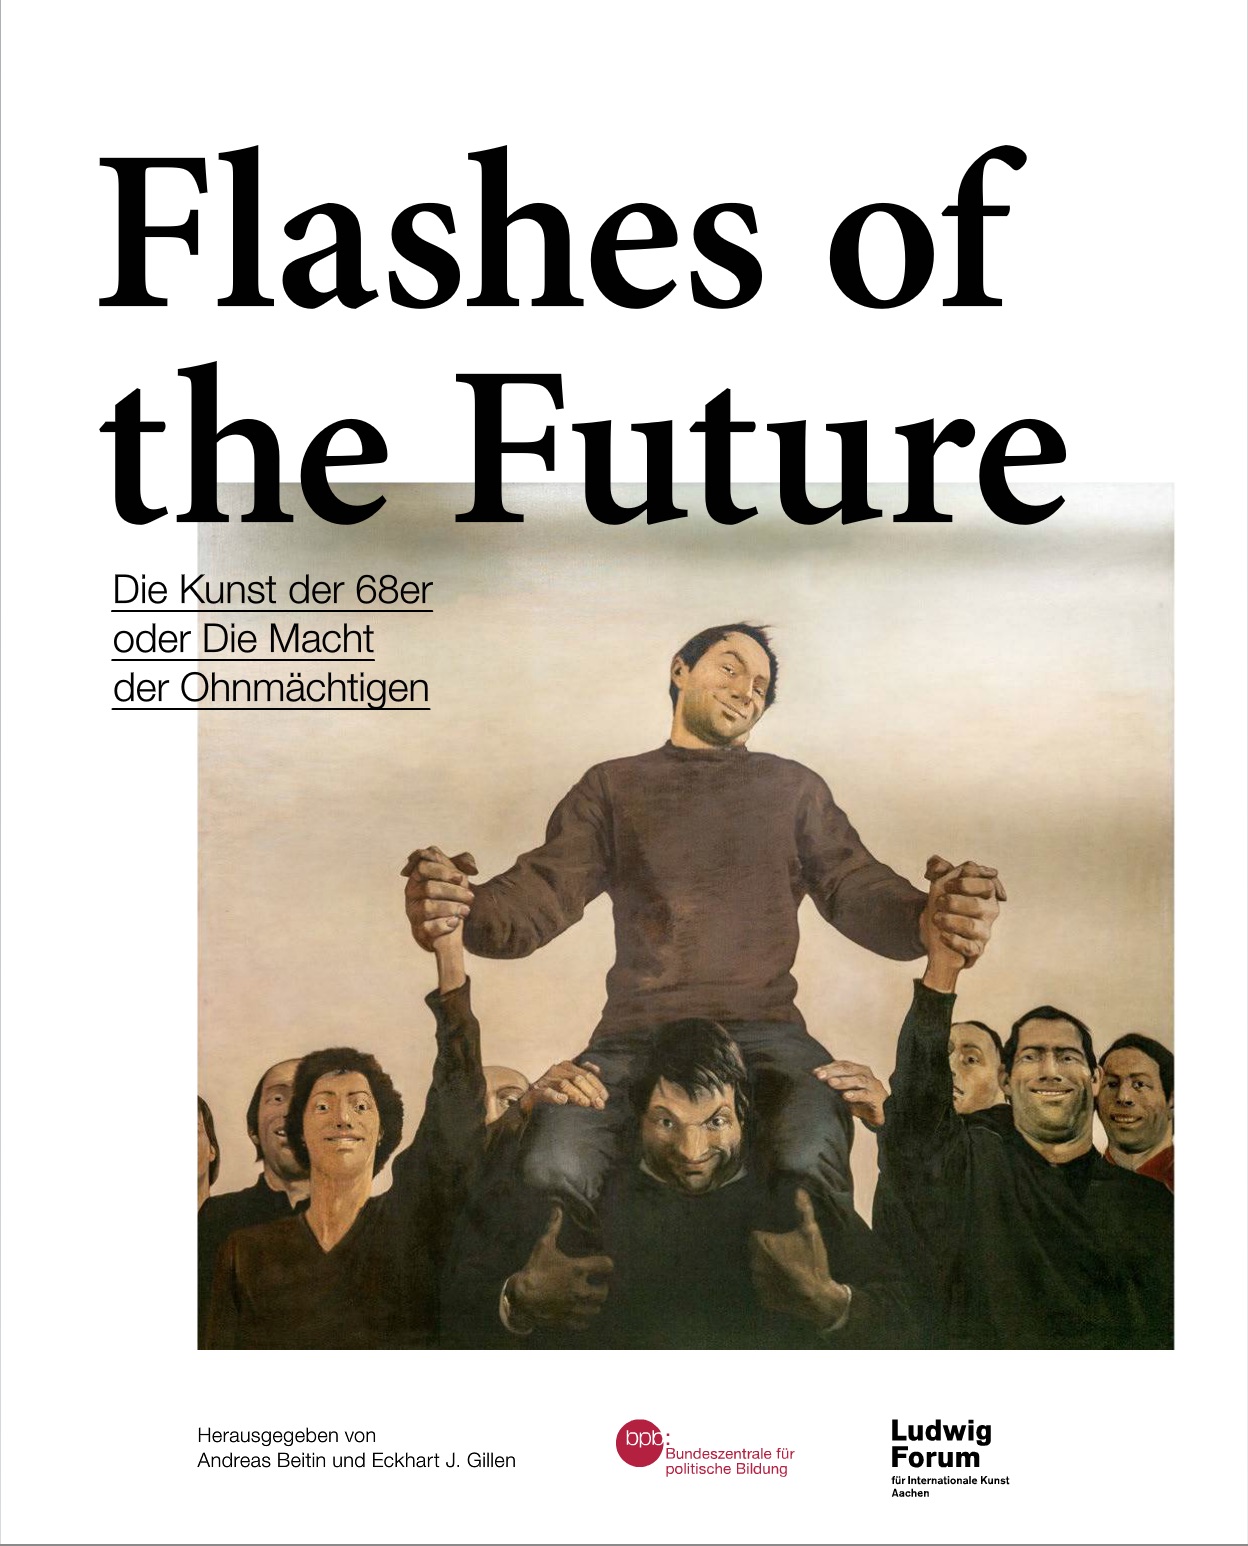 Flashes of the Future. Die Kunst der 68er oder Die Macht der Ohnmächtigen, Bild: Bonn: Bundeszentrale für politische Bildung, 2018..